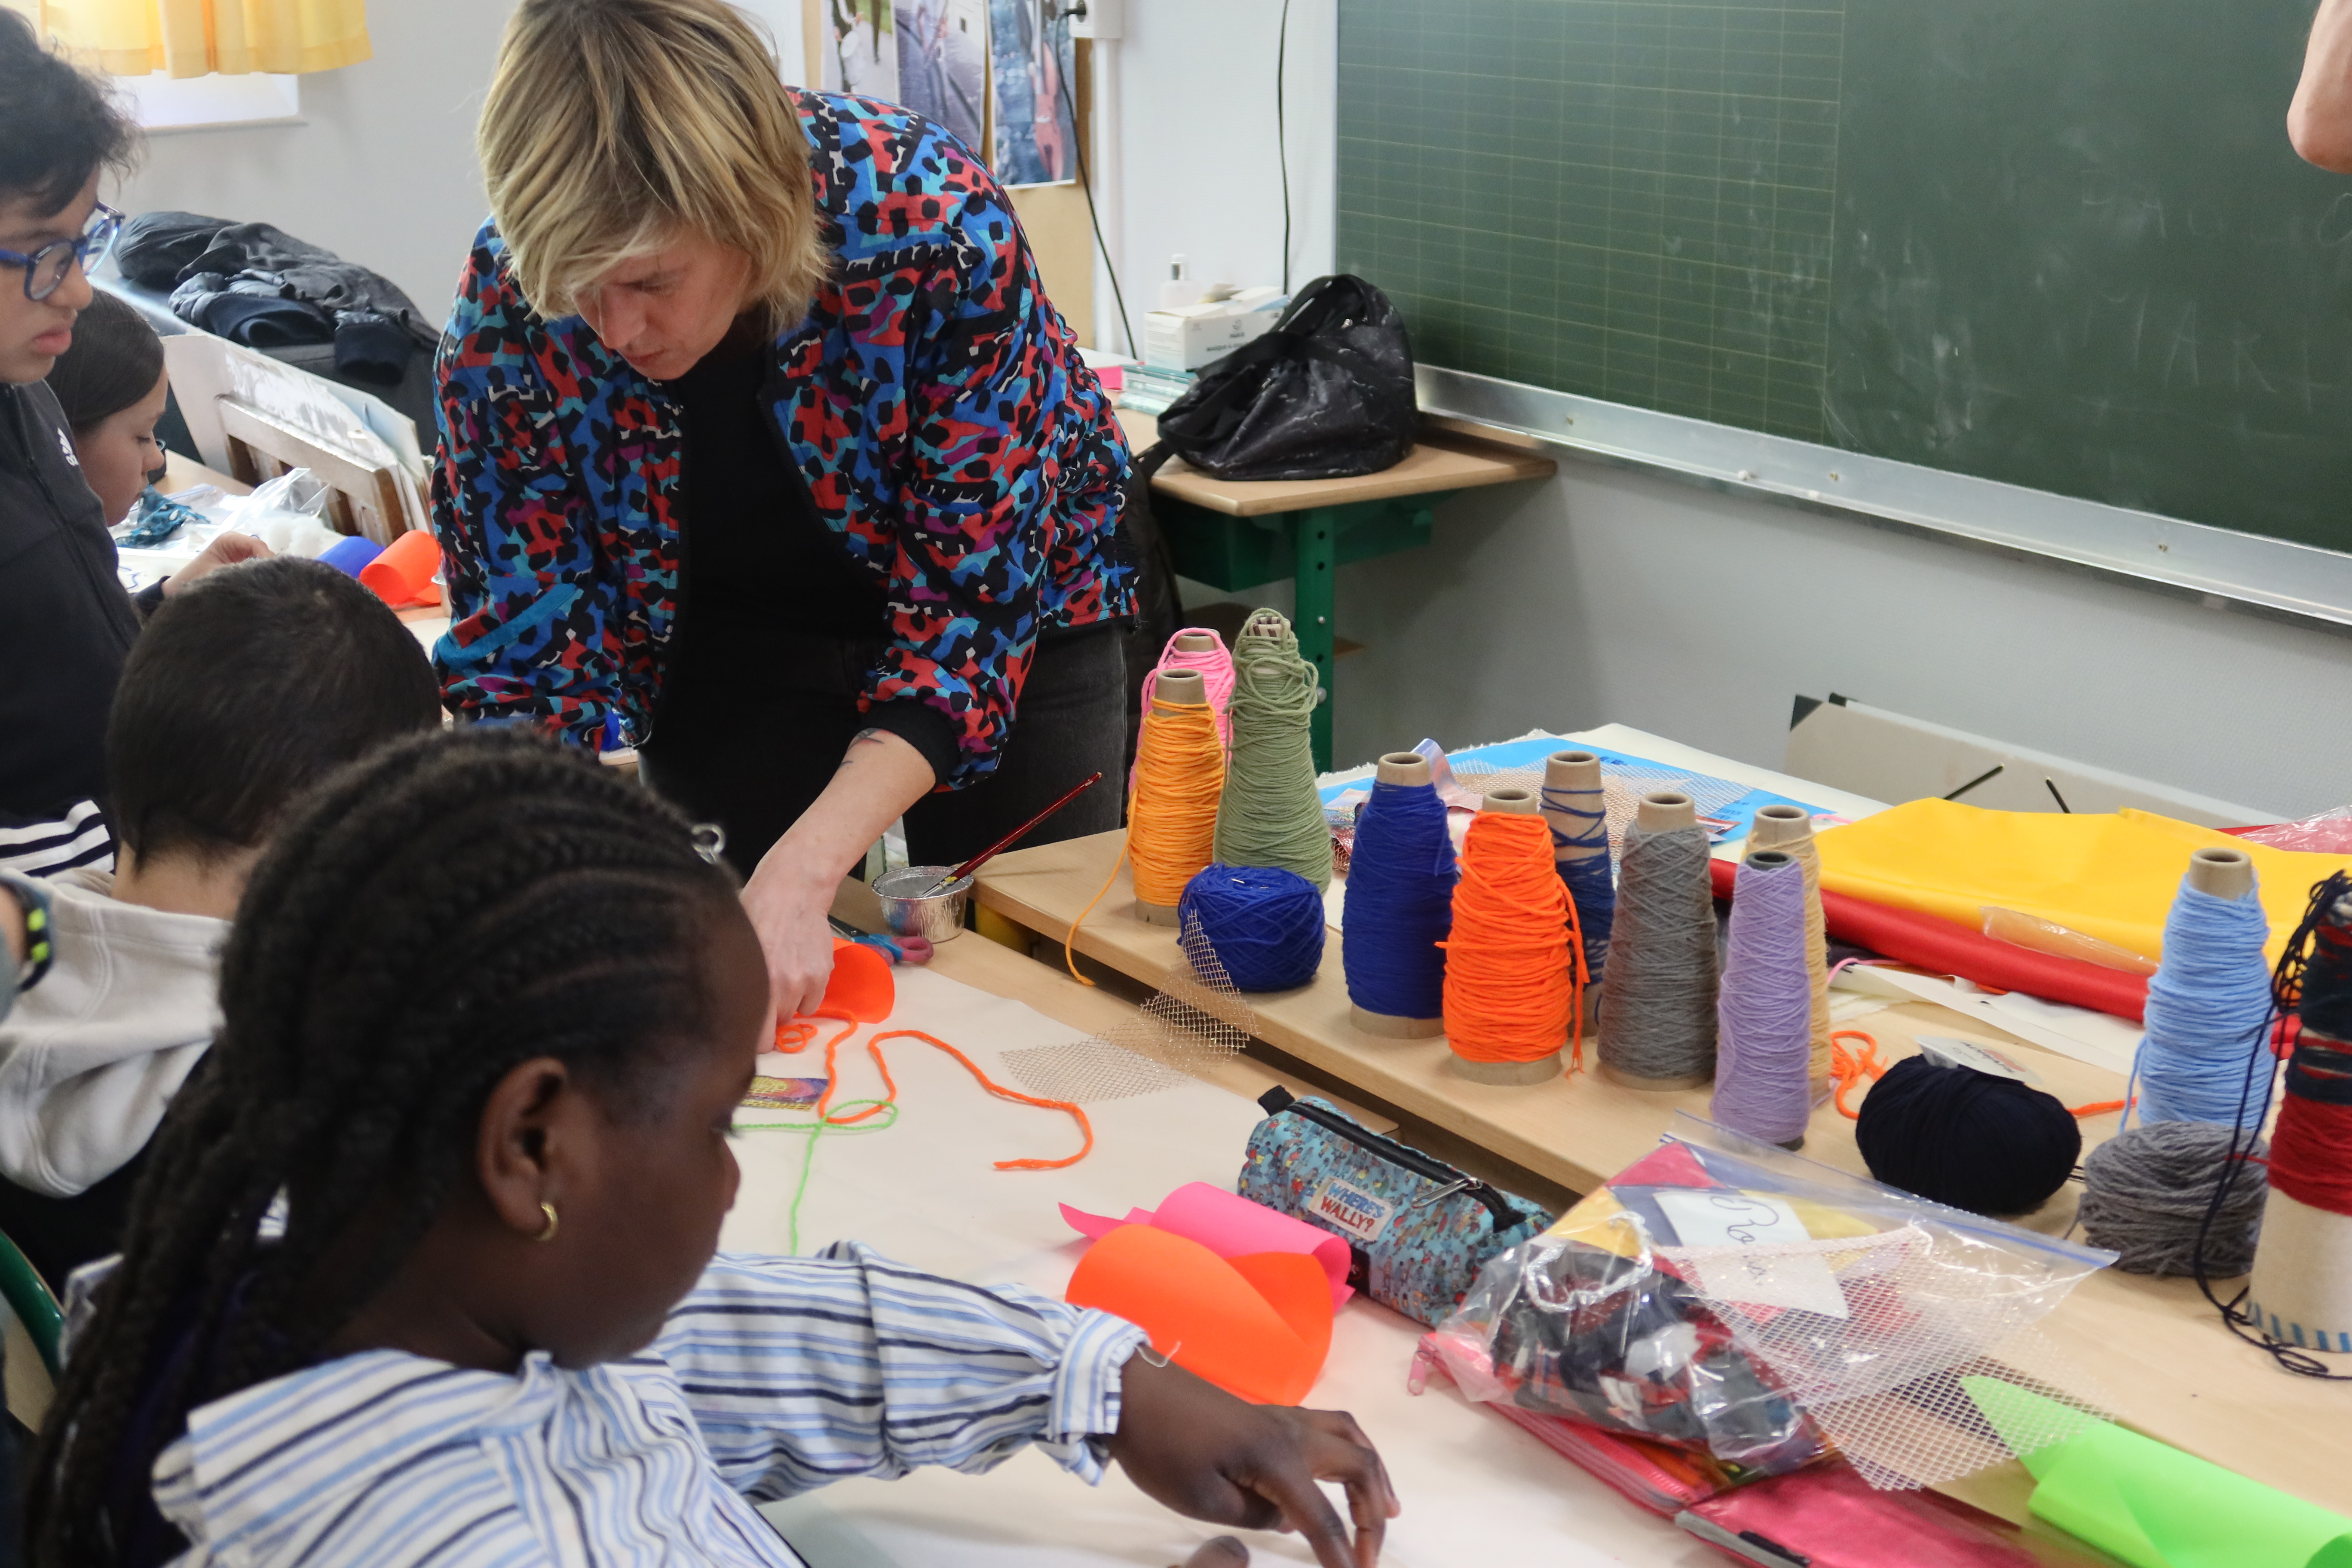 Les élèves sont en train de réaliser un dessin à partir d'éléments textiles disparates pendant que Chloé Dugit-Gros passe les voir pour les aider ou leur expliquer la manière de procéder. L'artiste en penchée sur le pupitre d'un élève